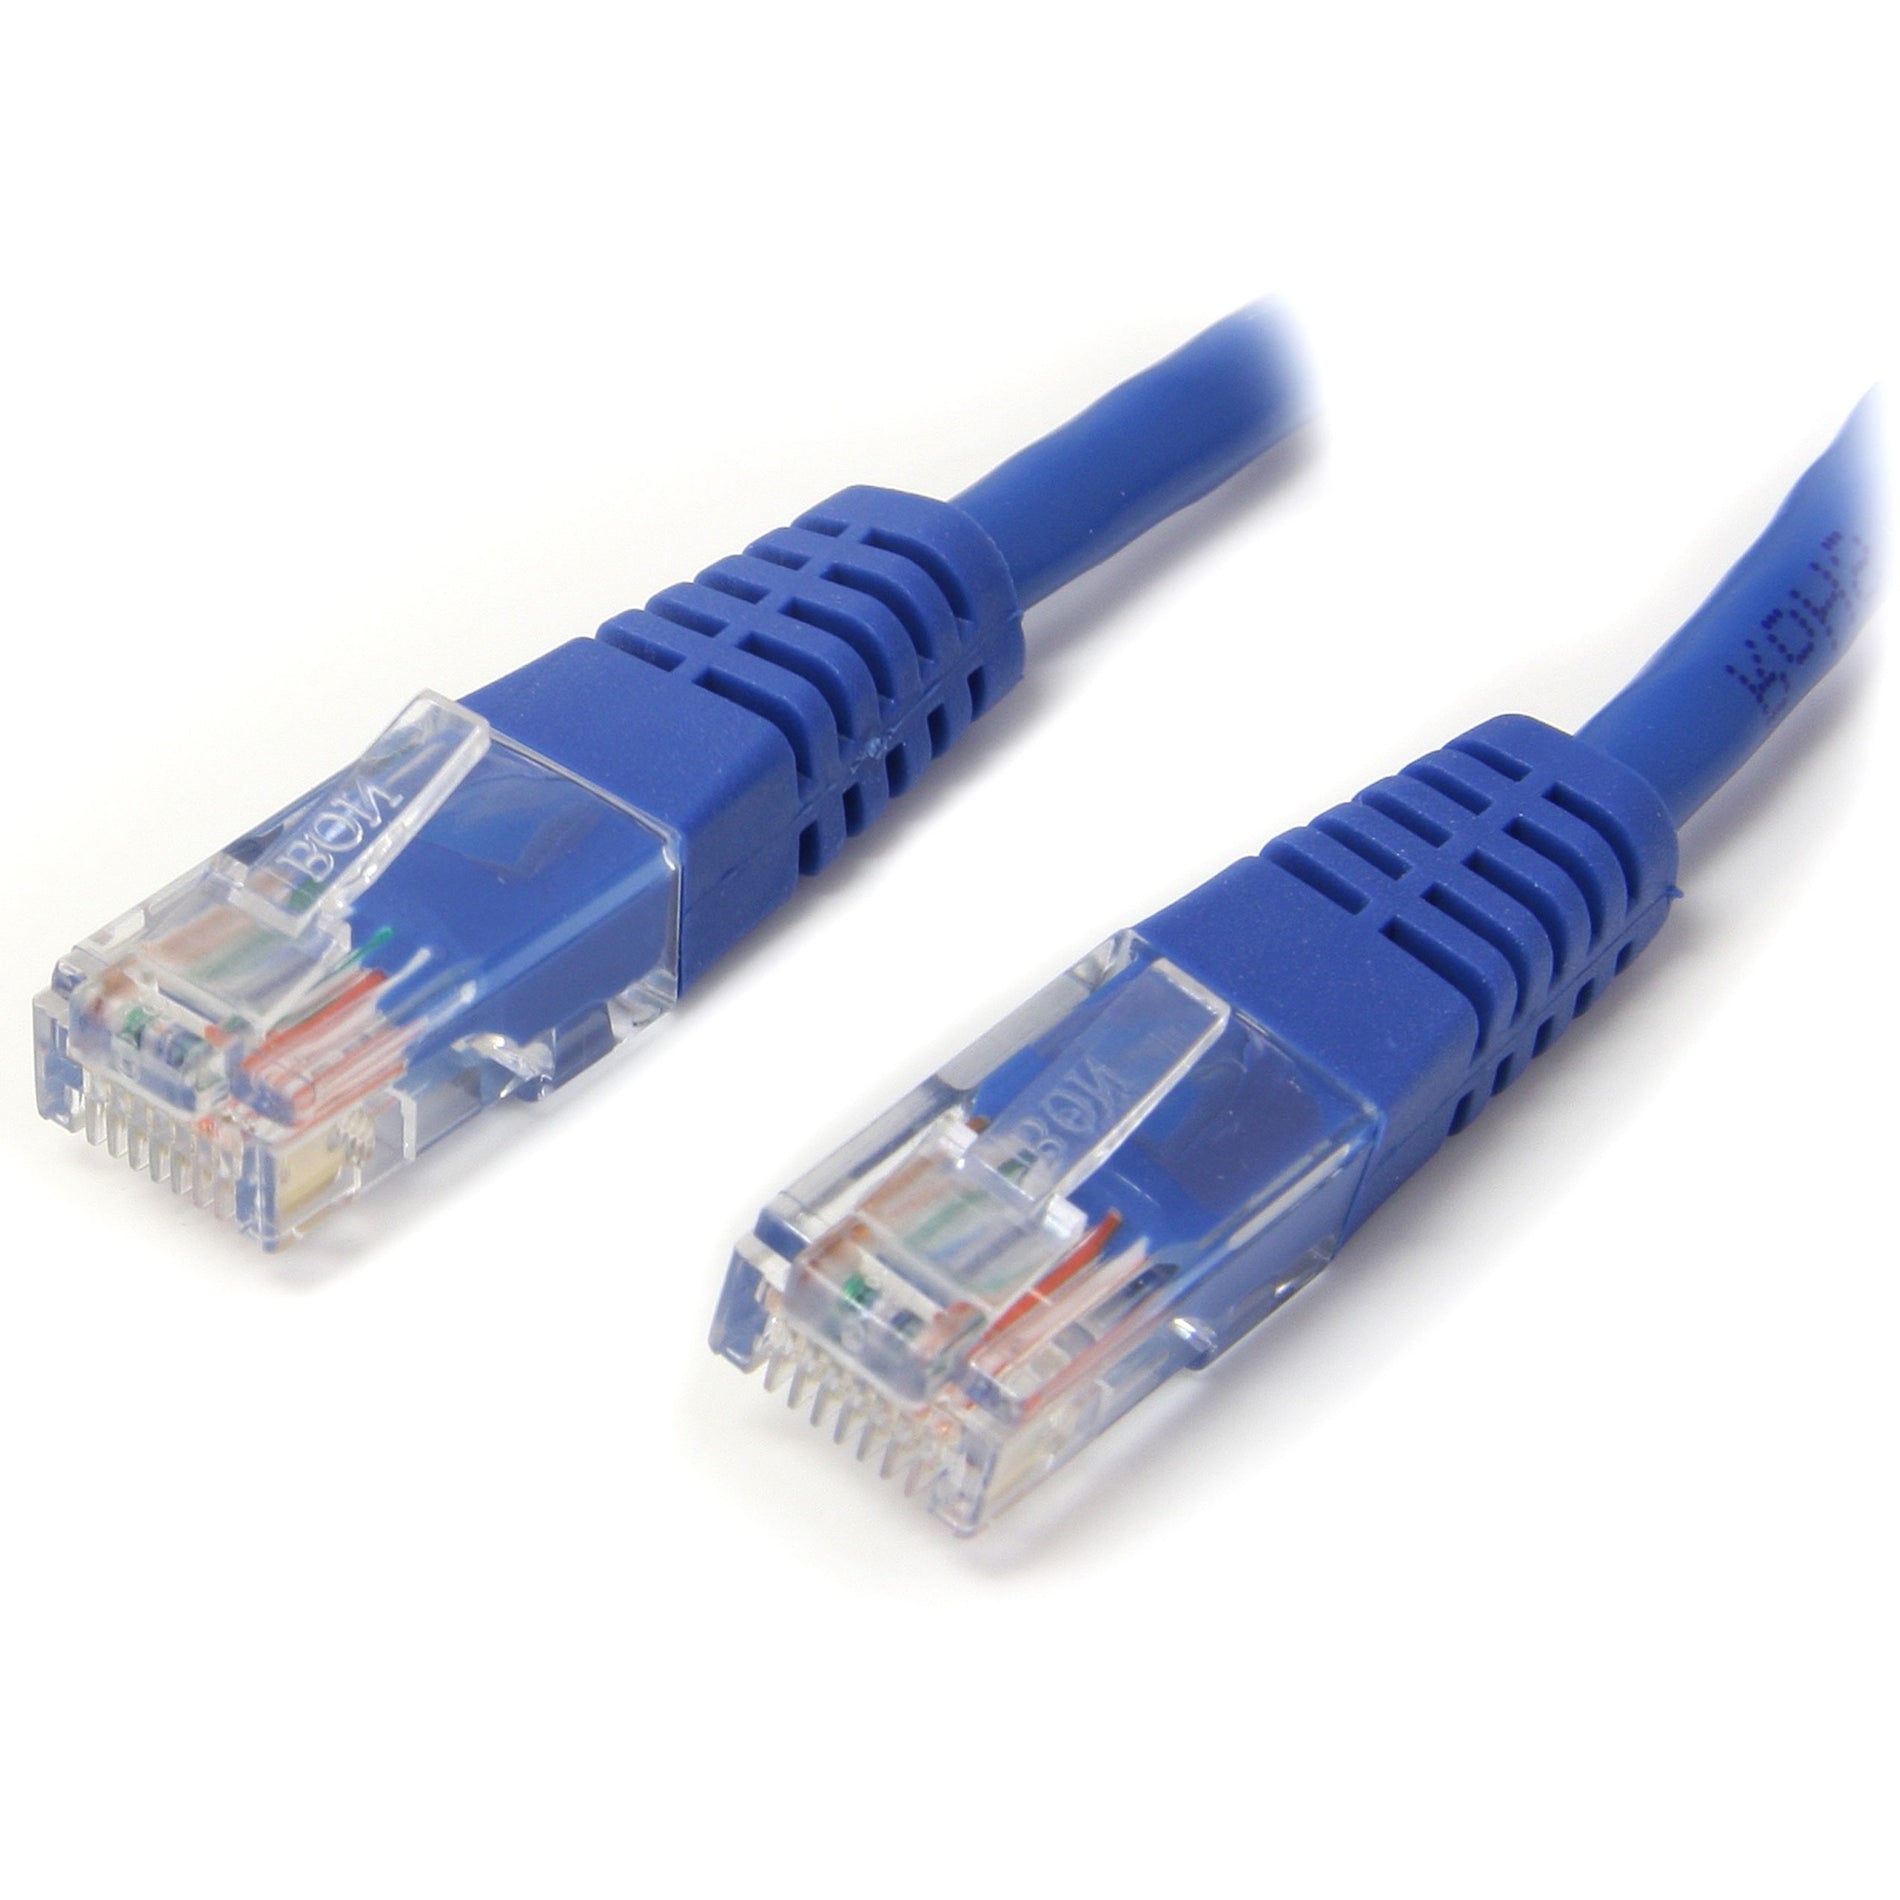 StarTech.com M45PATCH7BL 7ft Blue Molded Cat5e UTP Patch Cable, Lifetime Warranty, 50-Micron Gold Connectors